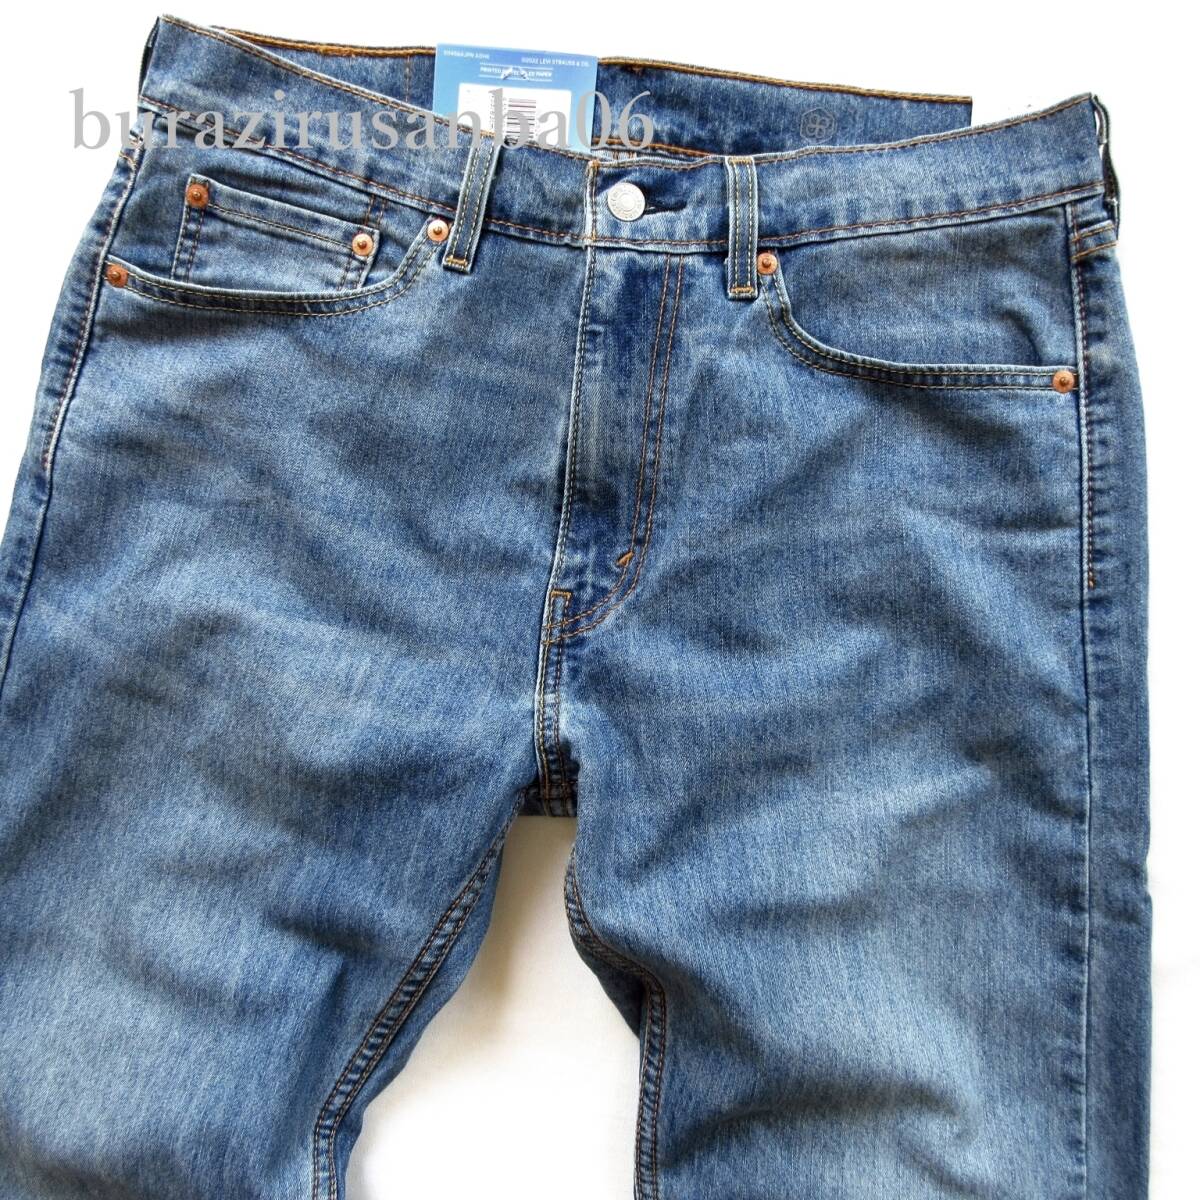  мужской W33* не использовался Levi\'s Levi's 505 COOL стрейч Denim брюки джинсы распорка весна лето скорость . легкий ... брюки 00505-2477